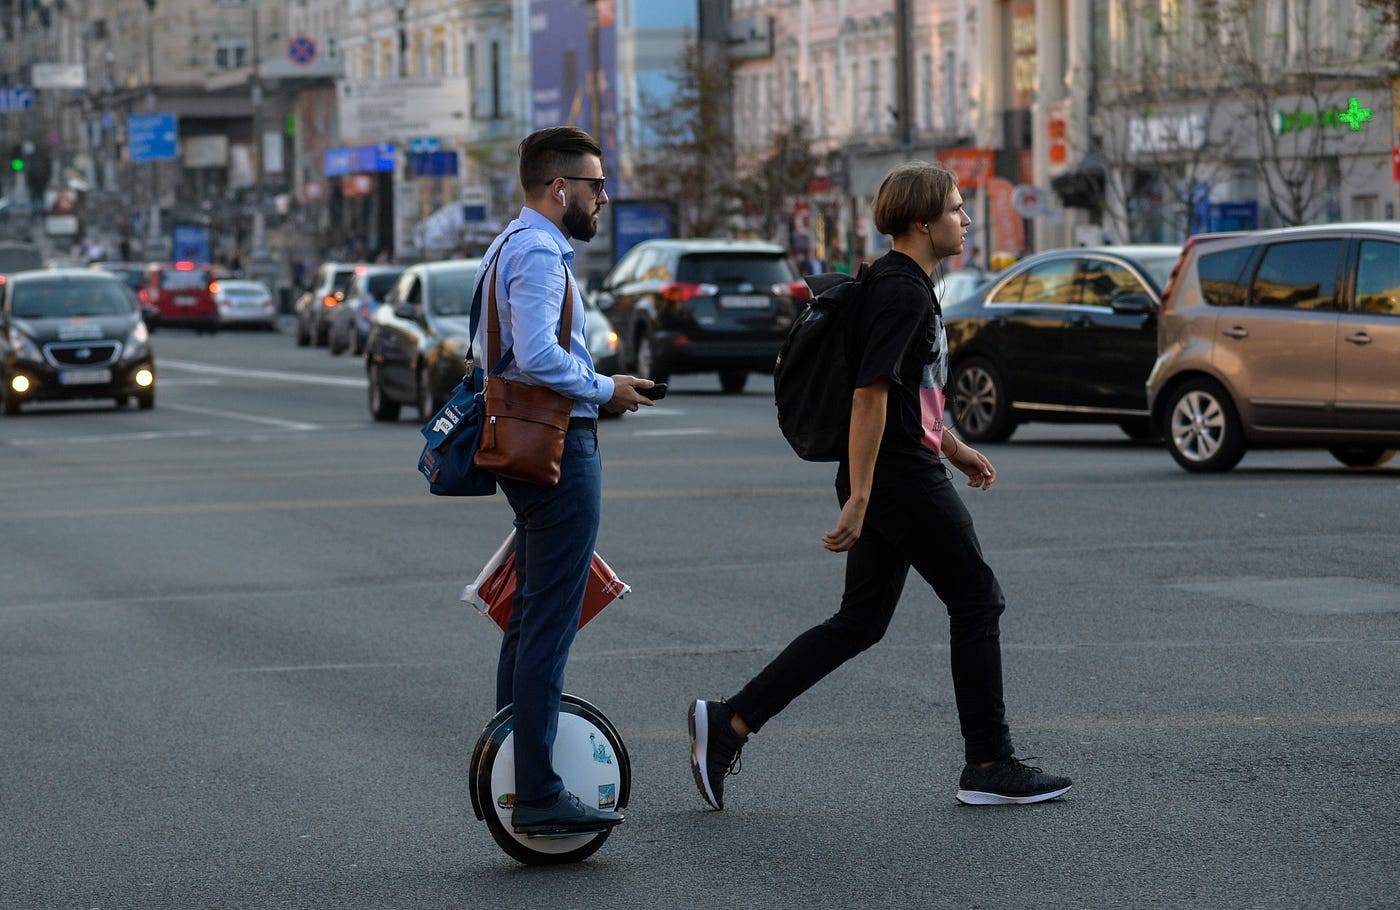 Уницикл — комплектация и советы по выбору велосипеда с одним колесом